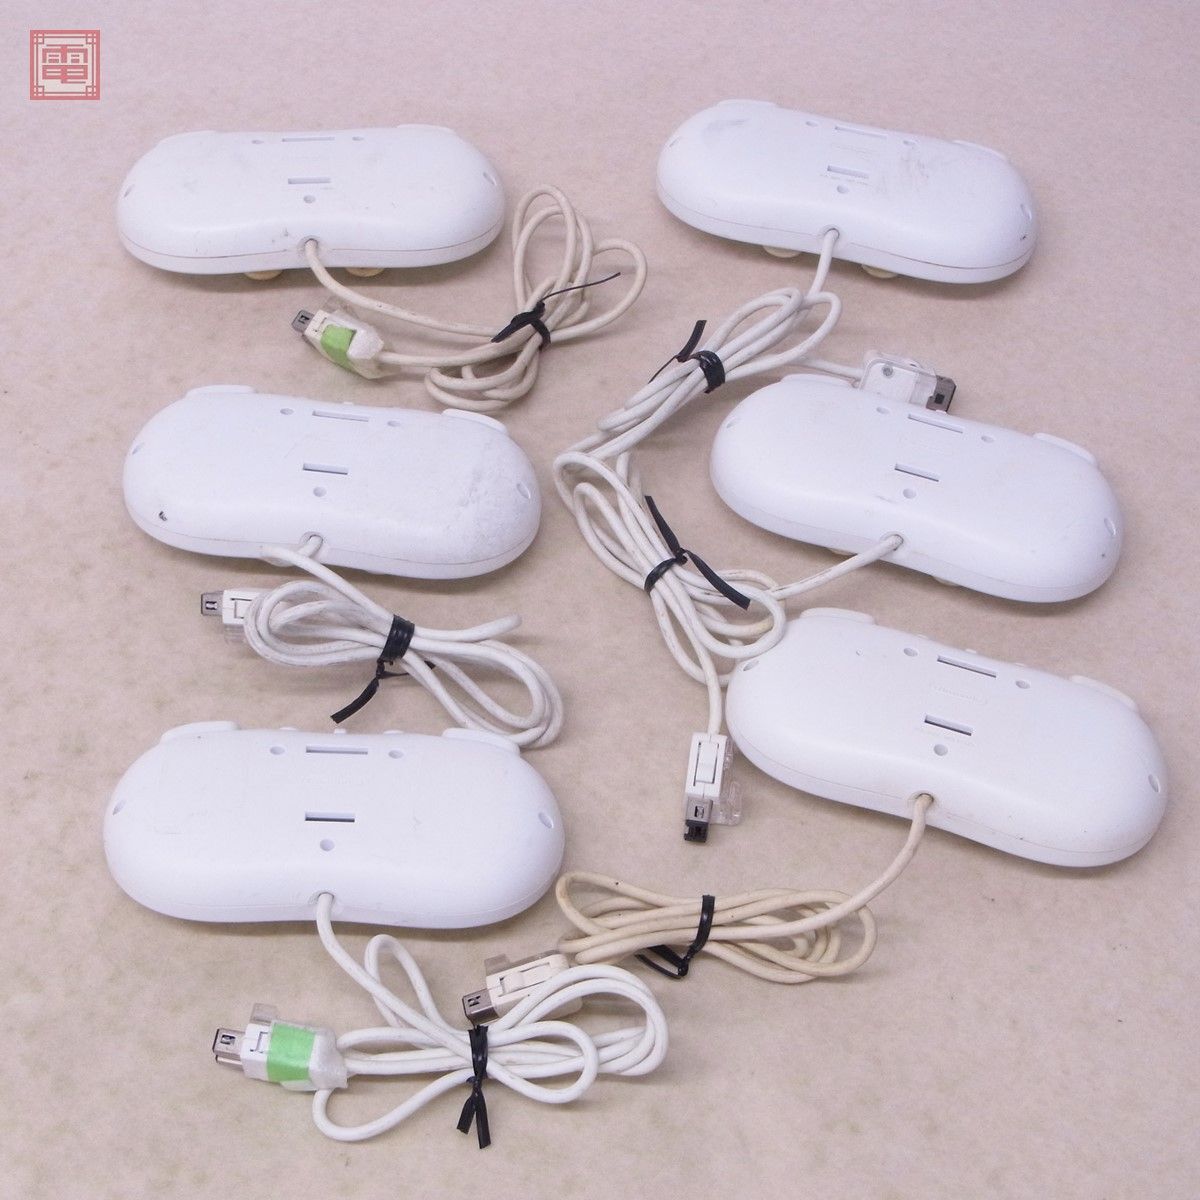 Wii Classic управление RVL-005 белый совместно 20 шт. комплект Nintendo nintendo [20